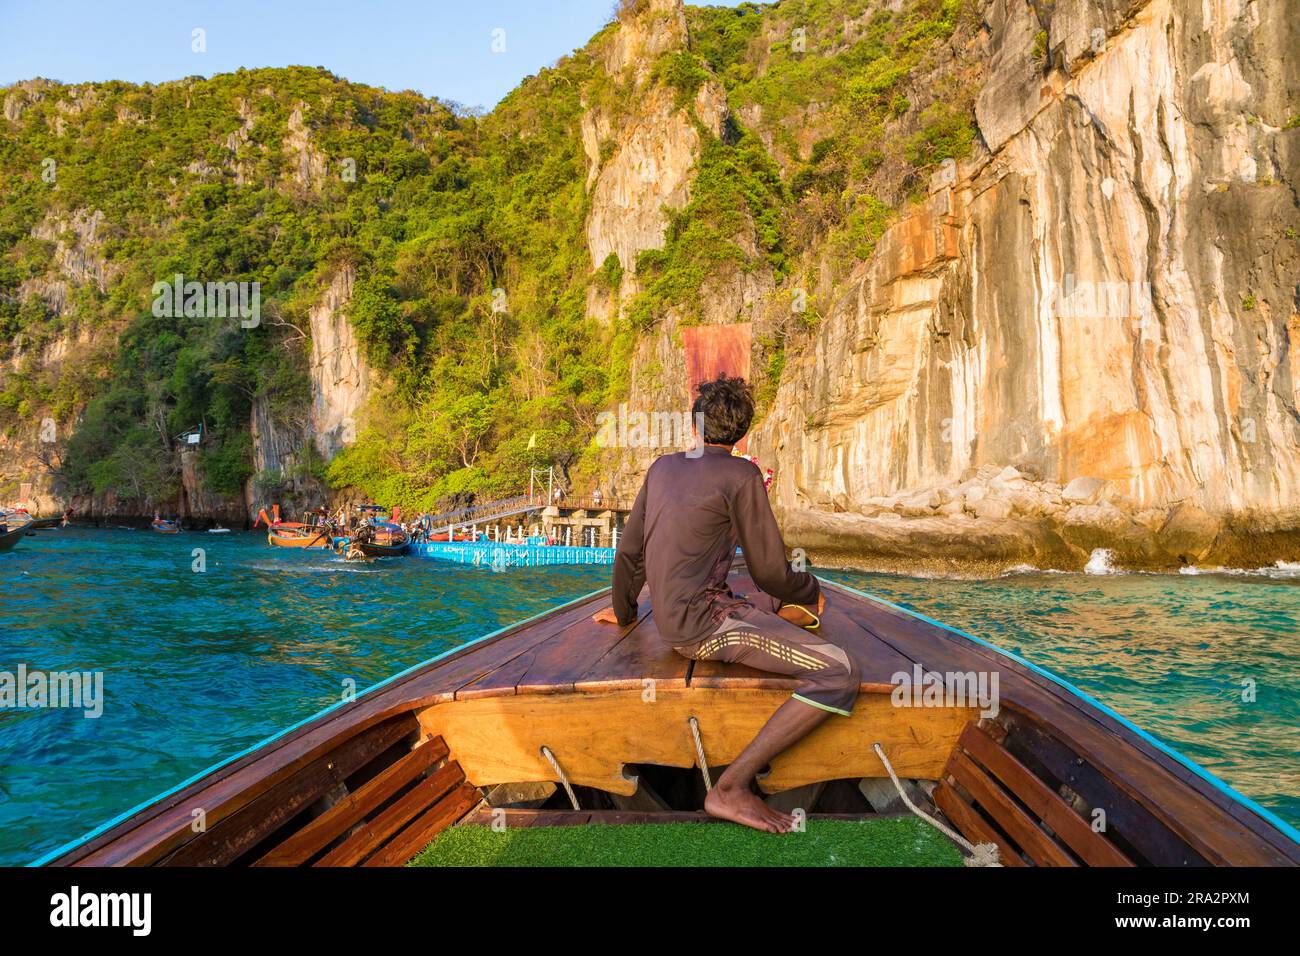 Tailandia, provincia de Krabi, isla de Koh Phi Phi Leh, muelle para acceder a la bahía Maya, barco de cola larga Foto de stock